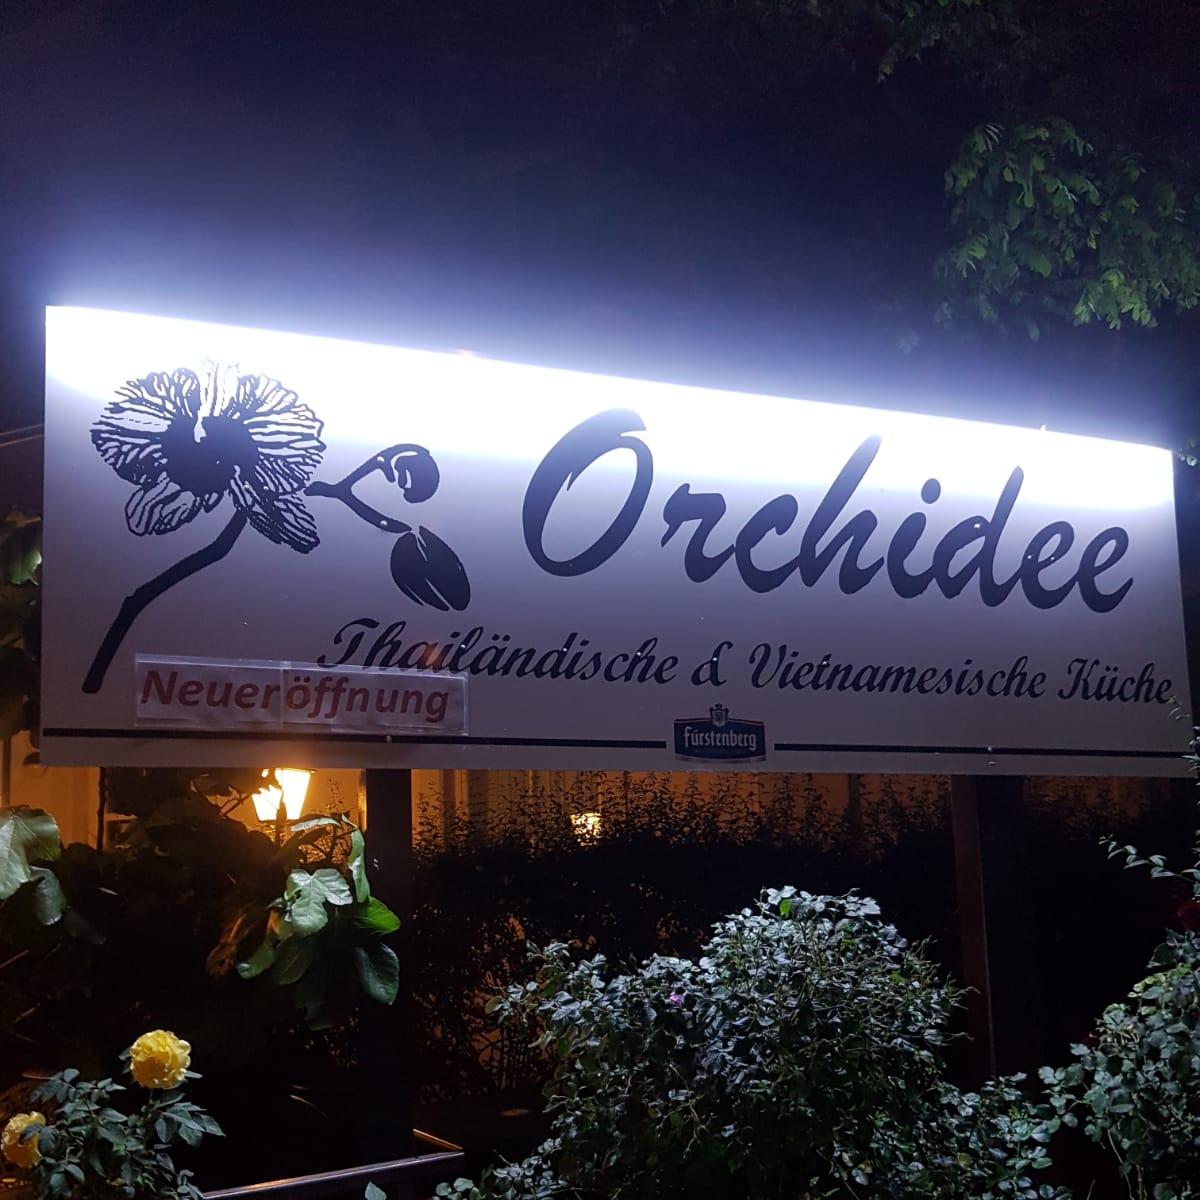 Restaurant "Orchidee" in Freiburg im Breisgau